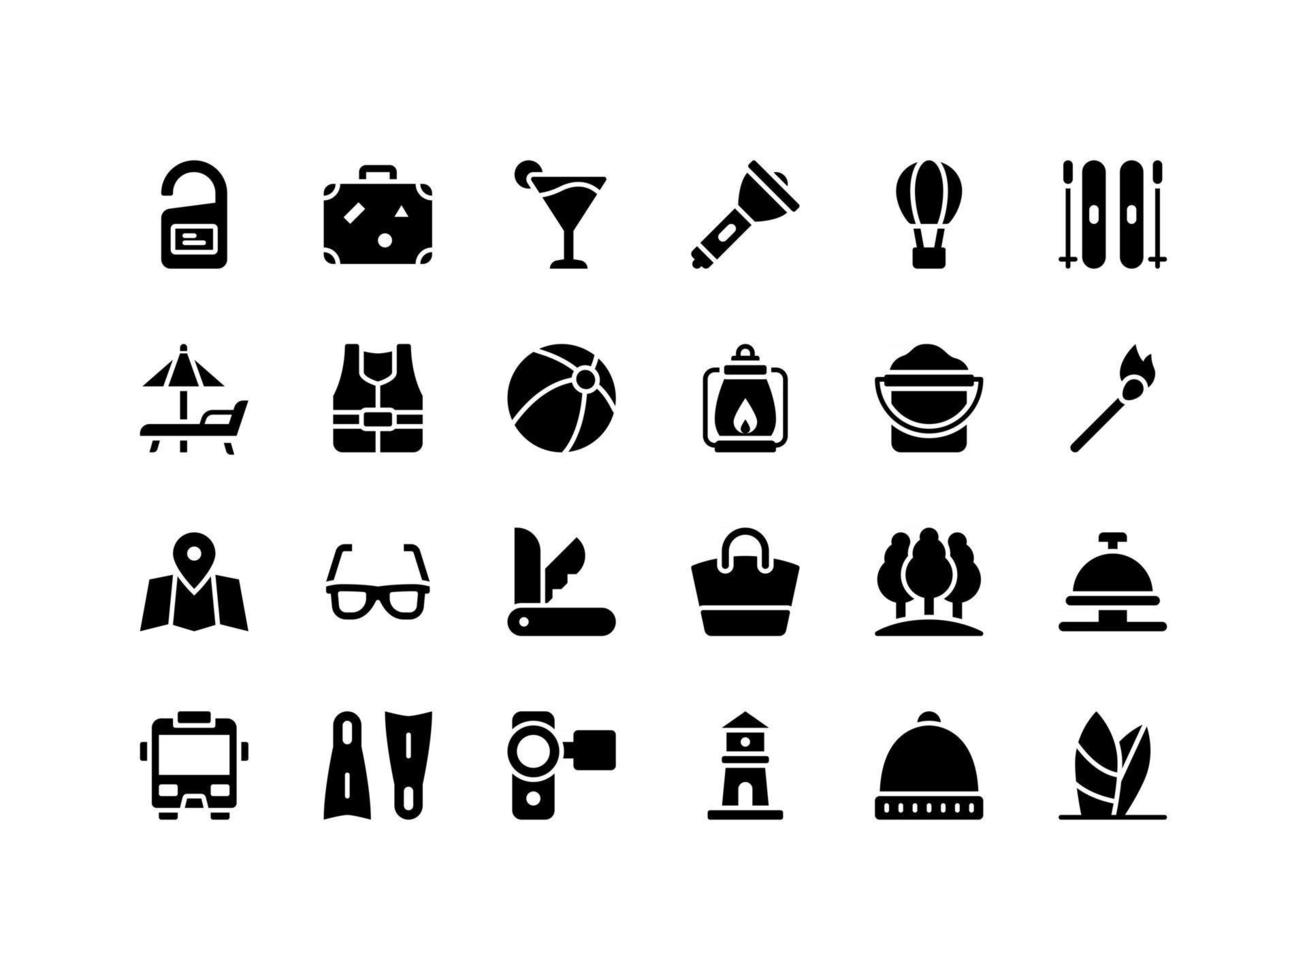 conjunto de ícones de glifo de férias e viagens vetor